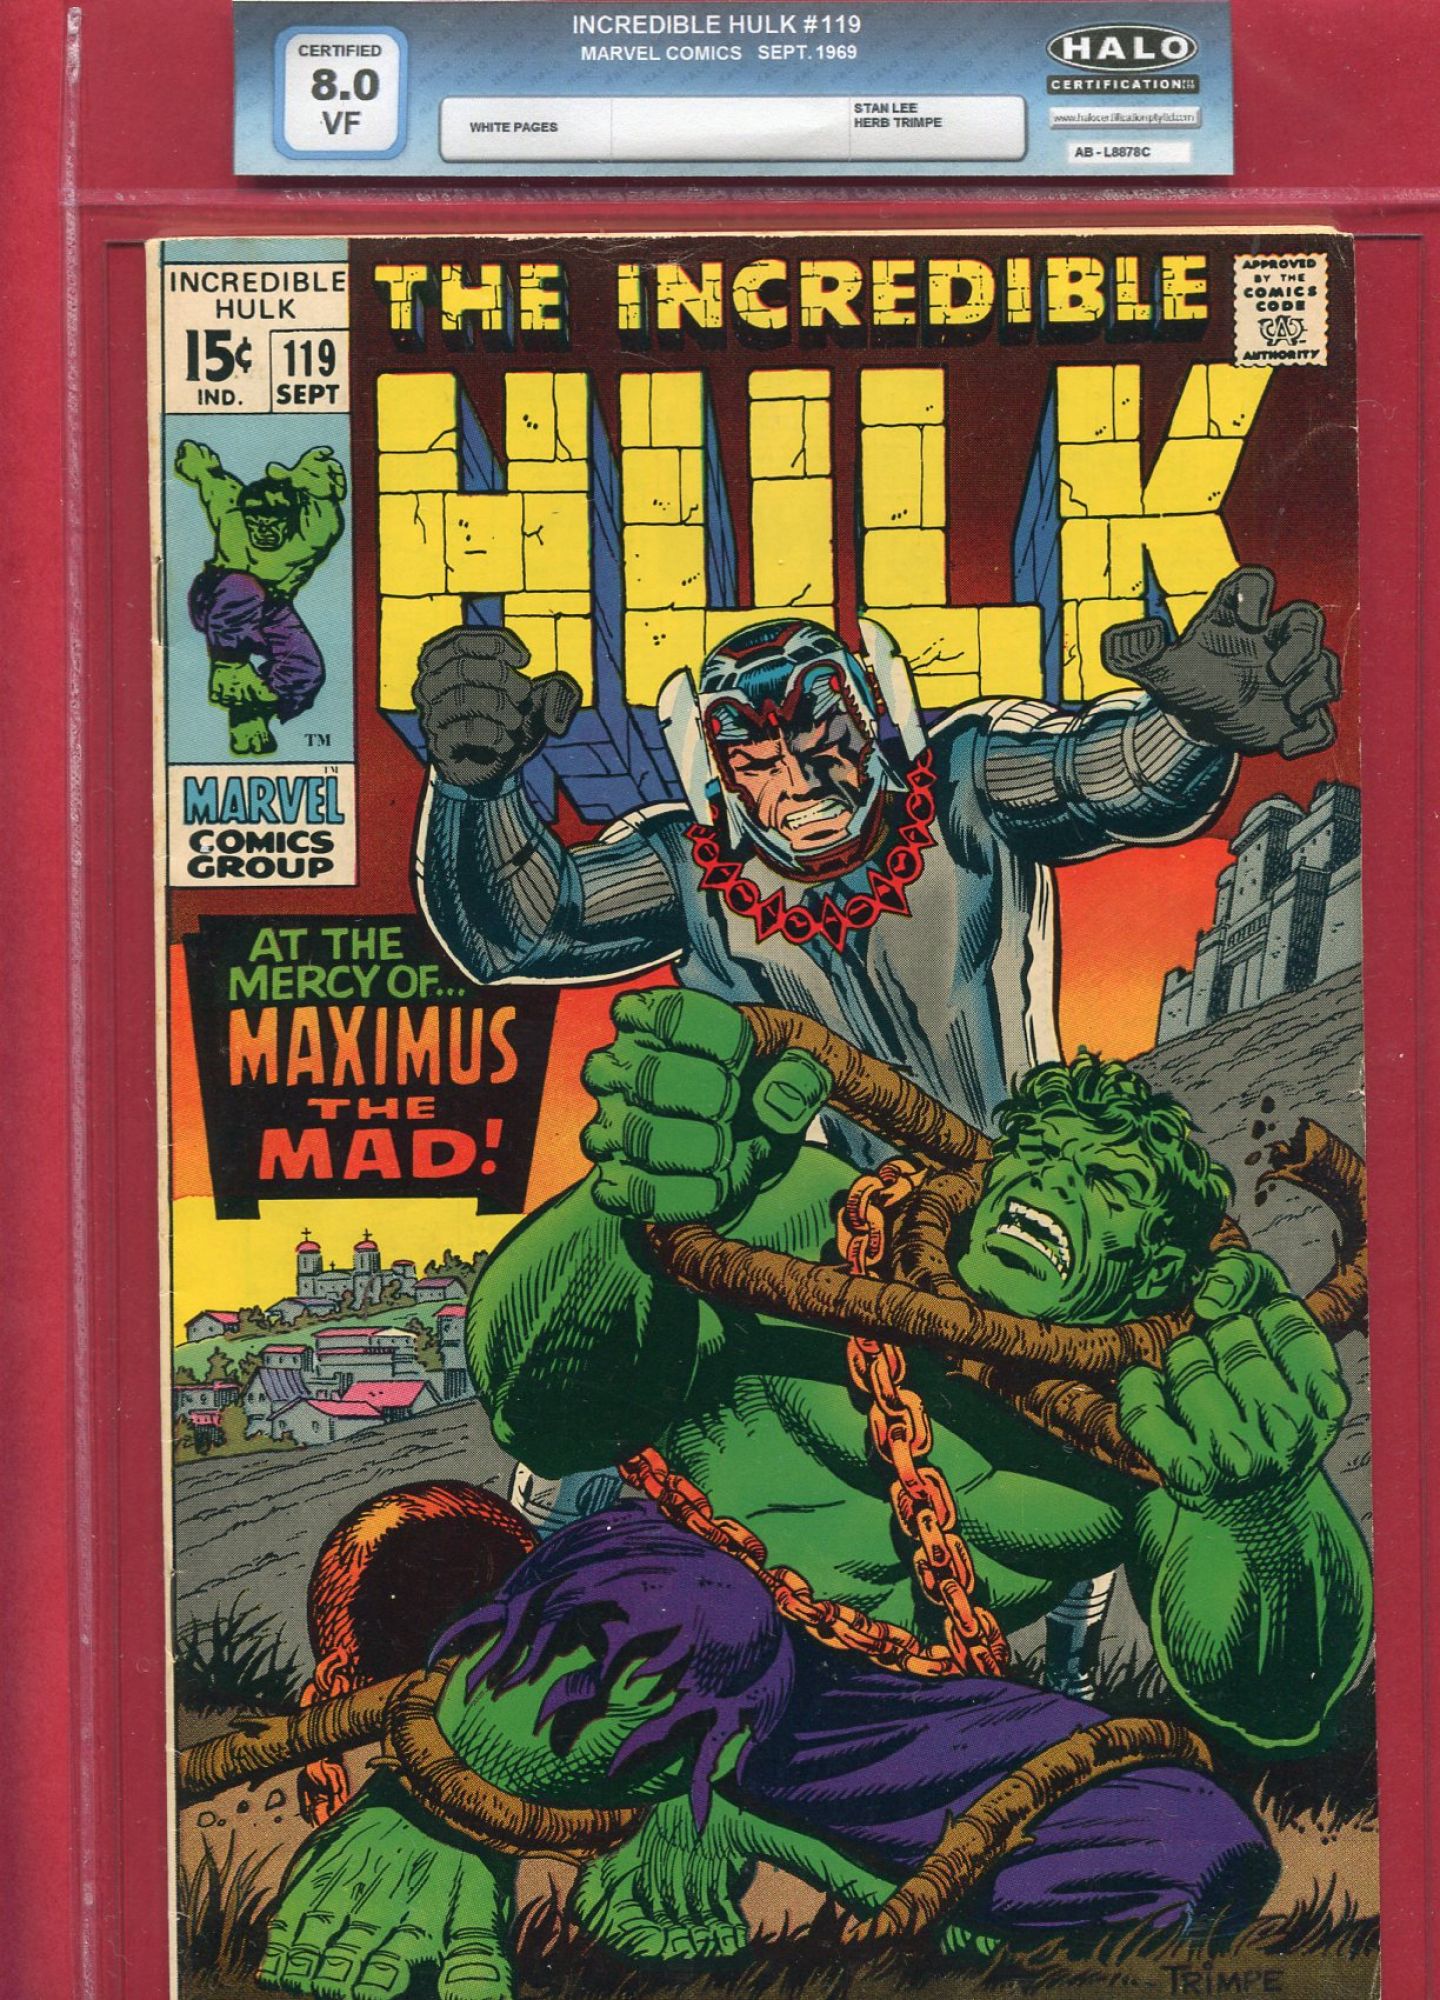 Incredible Hulk #119, Sep 1969, 8.0 VF Halo Soft Slab